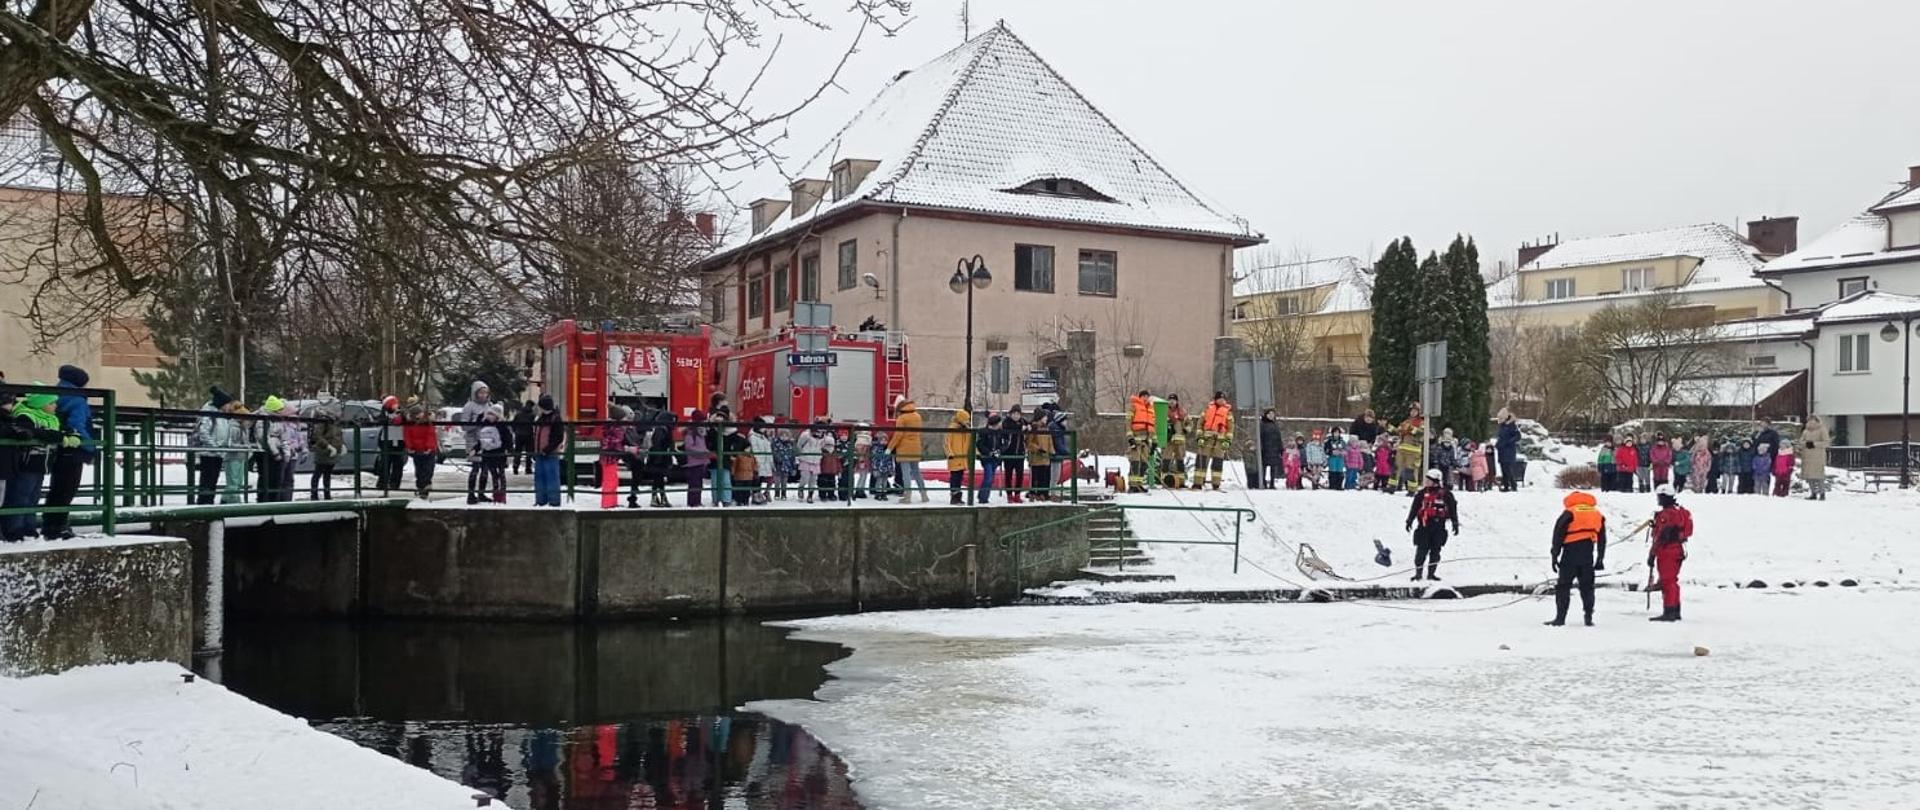 Na brzegu nad kanałem stoją dzieci, które oglądają pokazy z ratownictwa lodowego organizowane przez strażaków. 2 strażaków stoi na lodzie i omawia techniki ratowania osoby pod która załamał się lód. Za dziećmi w stoją dwa samochody gaśnicze i widoczne są bloki mieszkalne. 